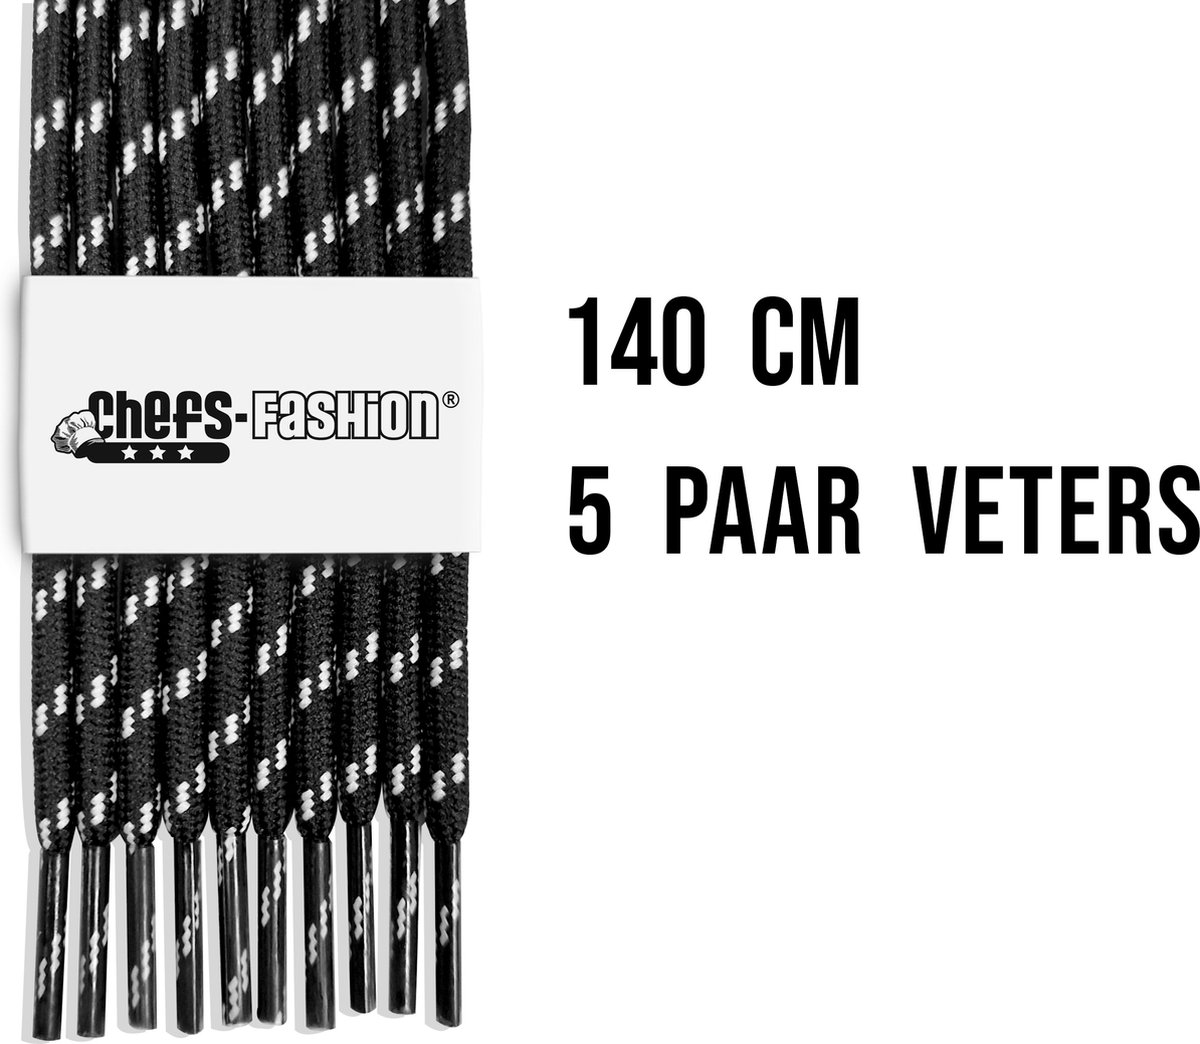 Chefs Fashion - Werk/Wandelschoen - Veters - Zwart/Wit - 140cm lang - 4mm dik - 5 paar